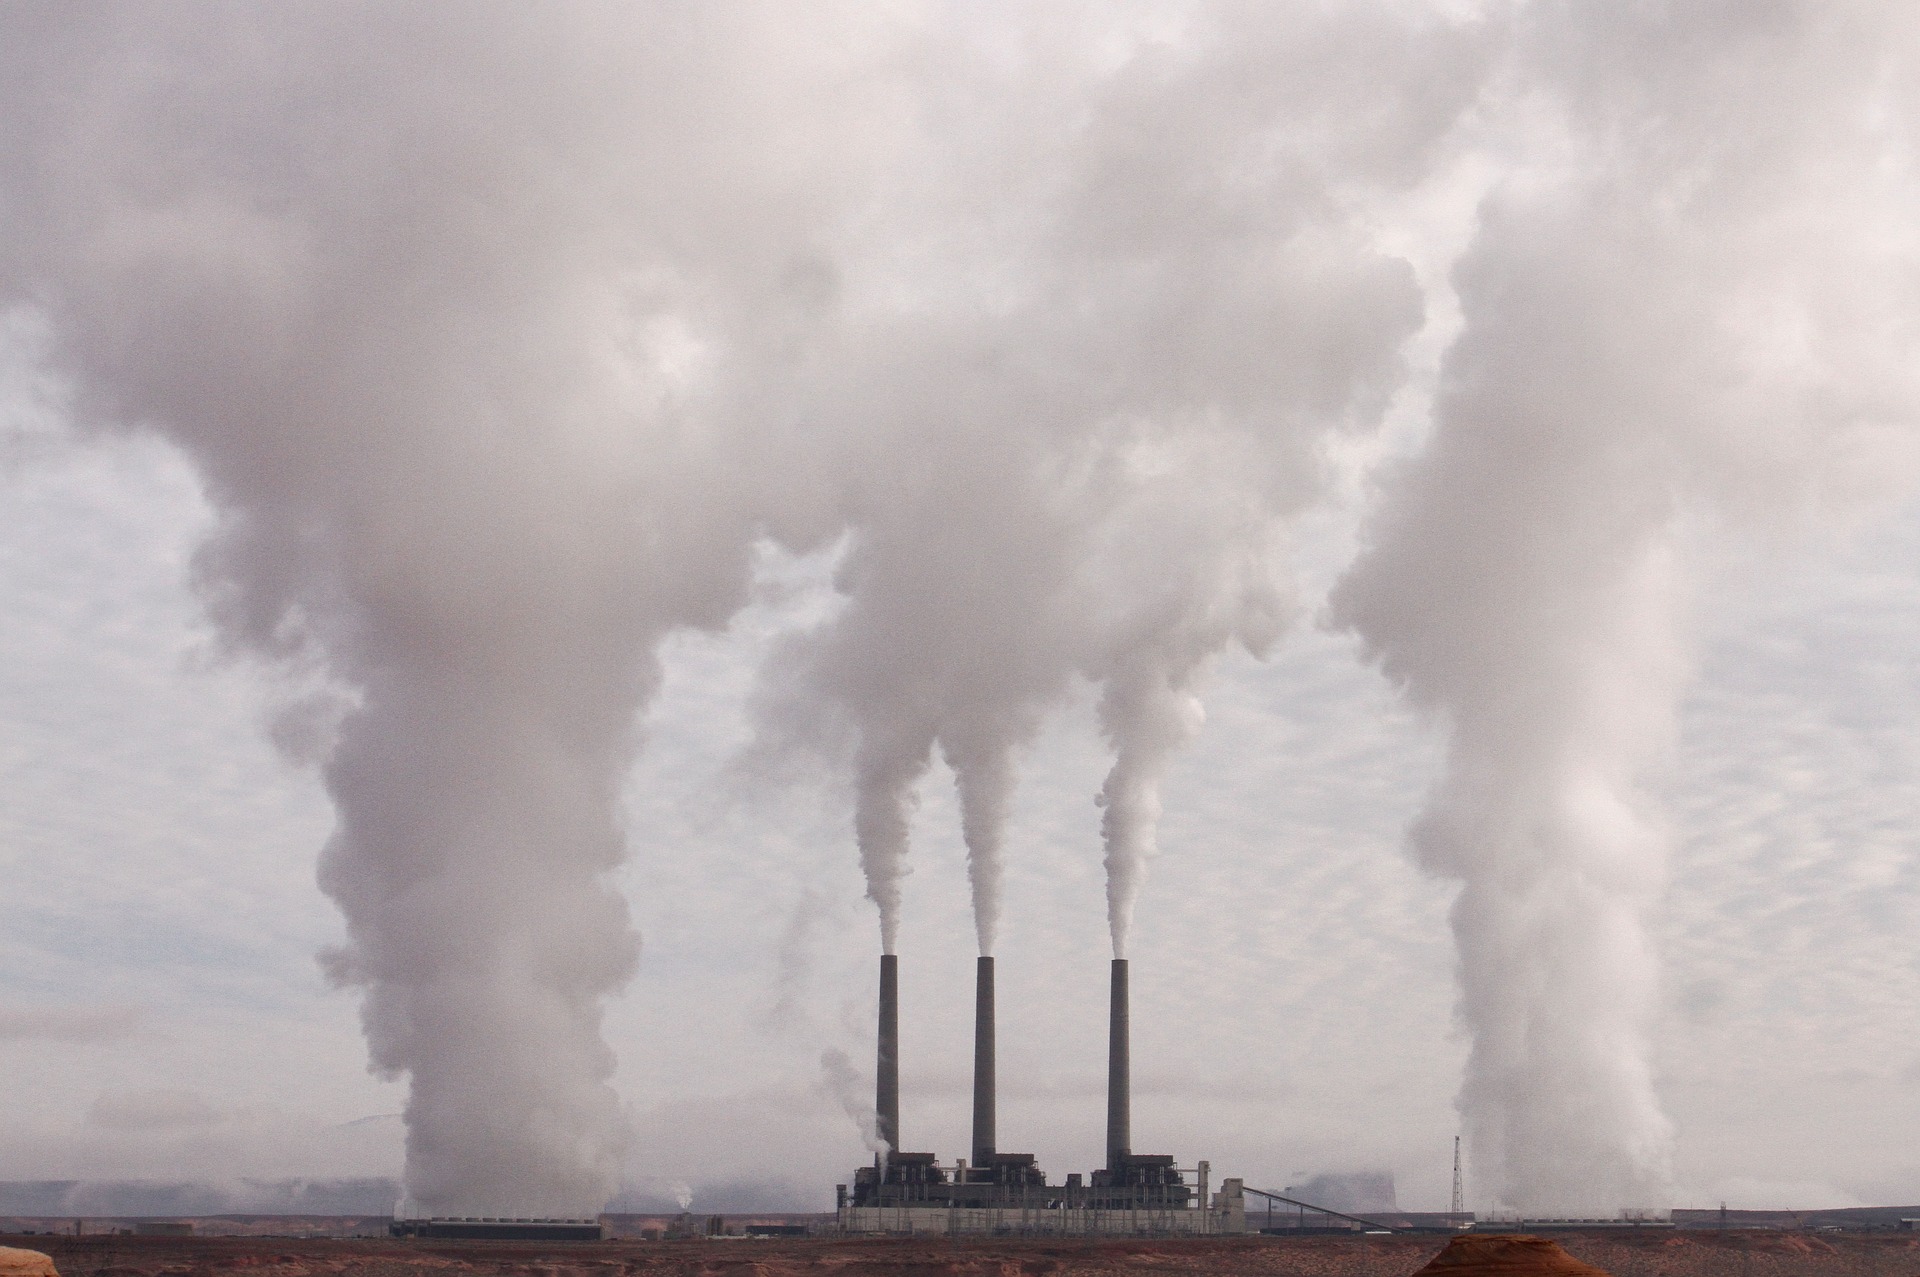 Global CO2 emissions hit record high: IEA